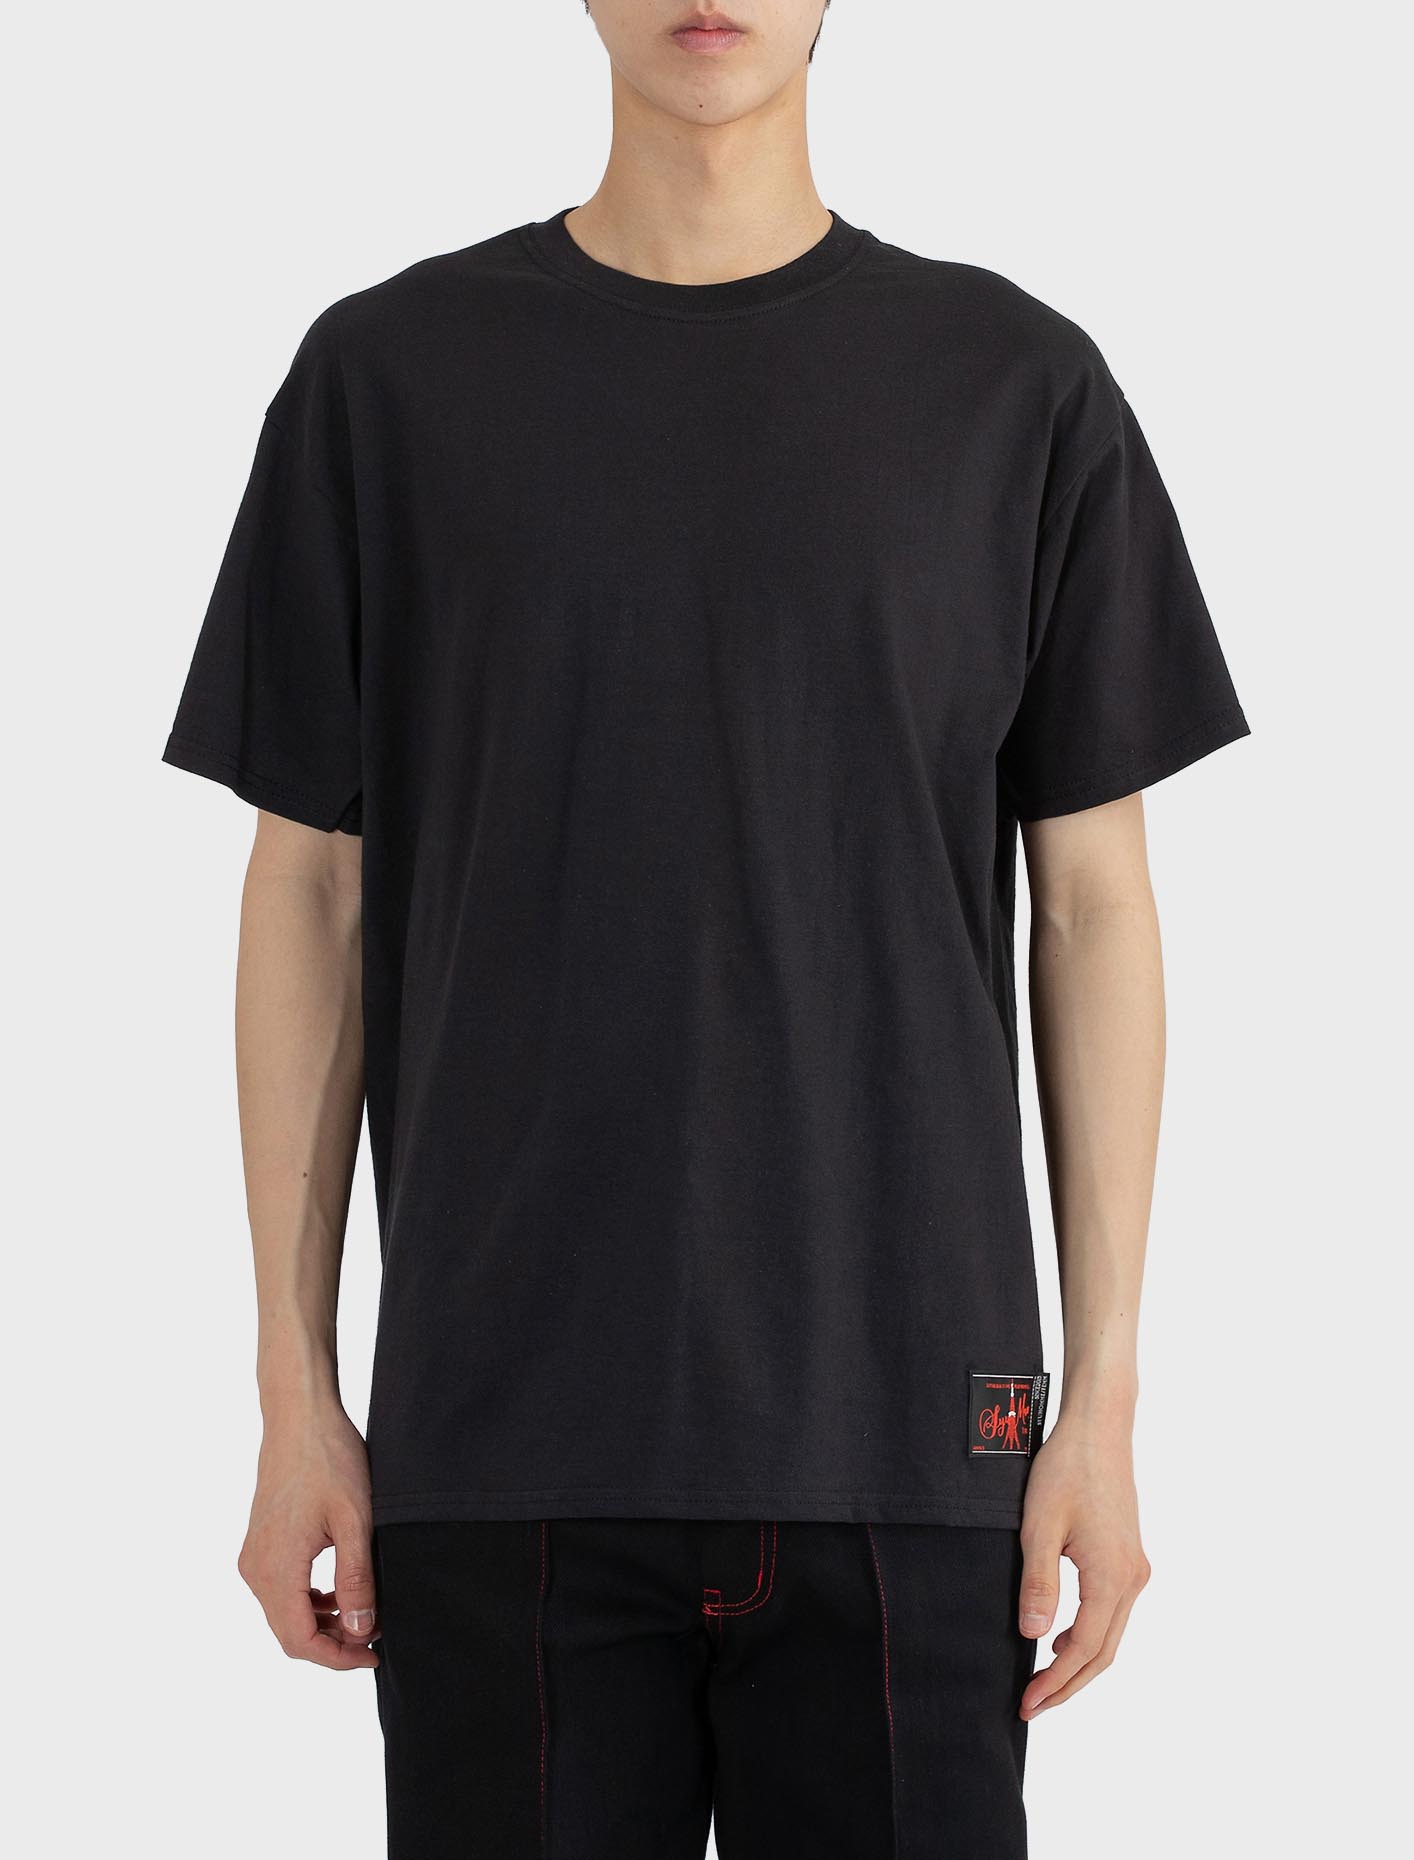 슈만 레드 로고 1팩 티셔츠 블랙